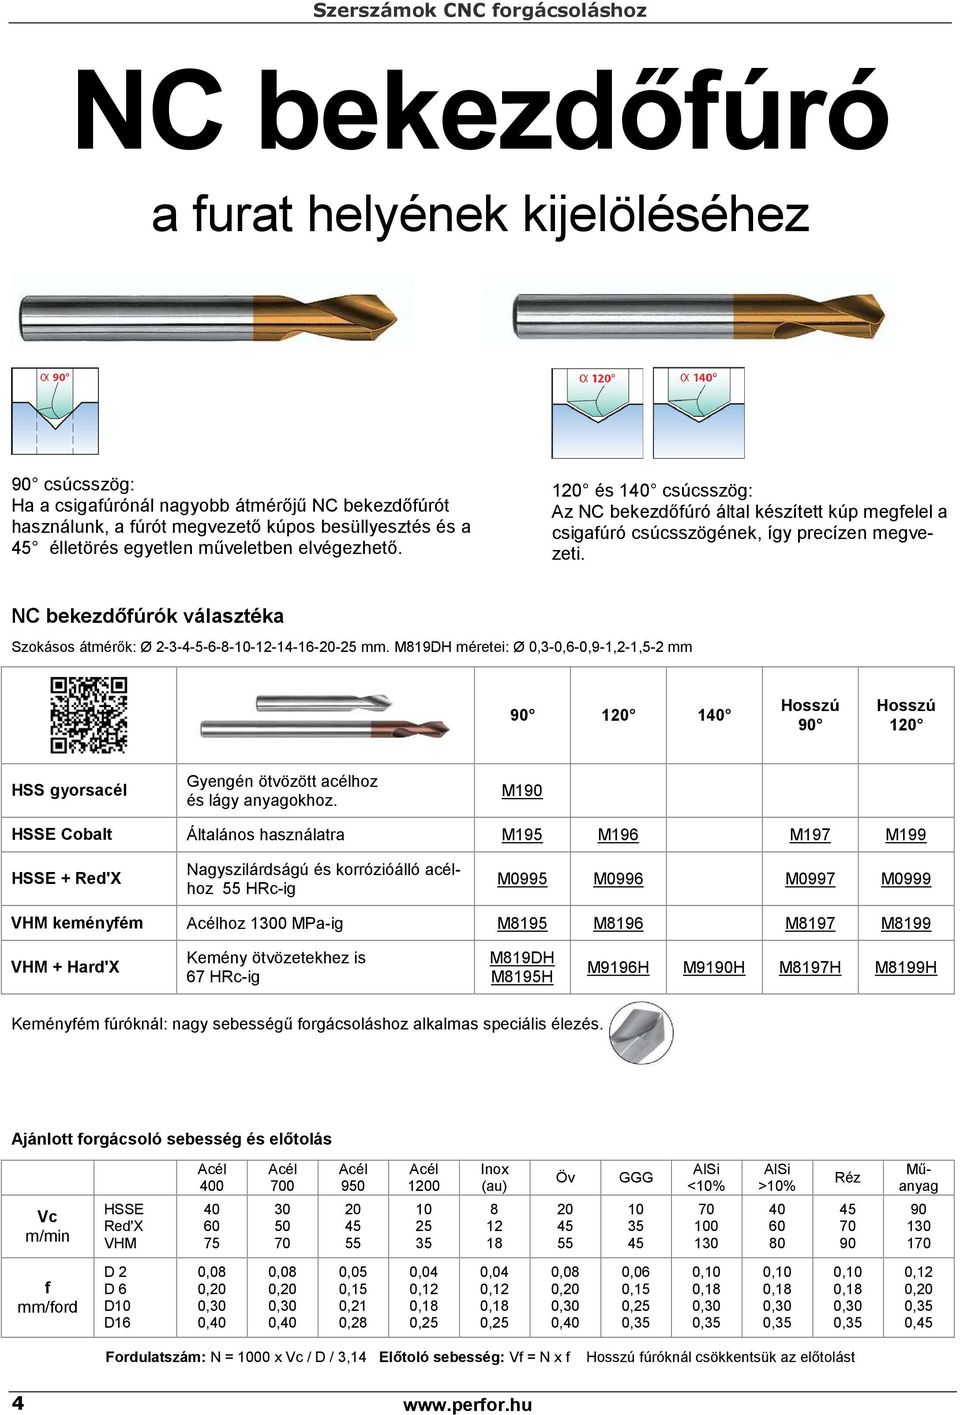 Szerszámok CNC forgácsoláshoz - PDF Ingyenes letöltés